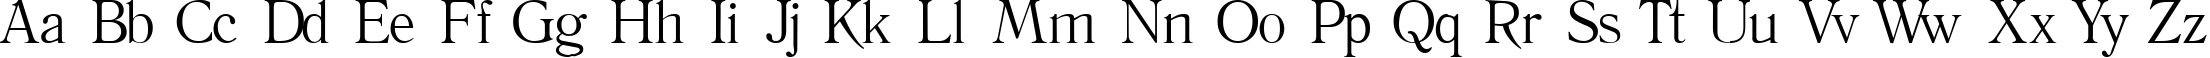 Пример написания английского алфавита шрифтом Literature